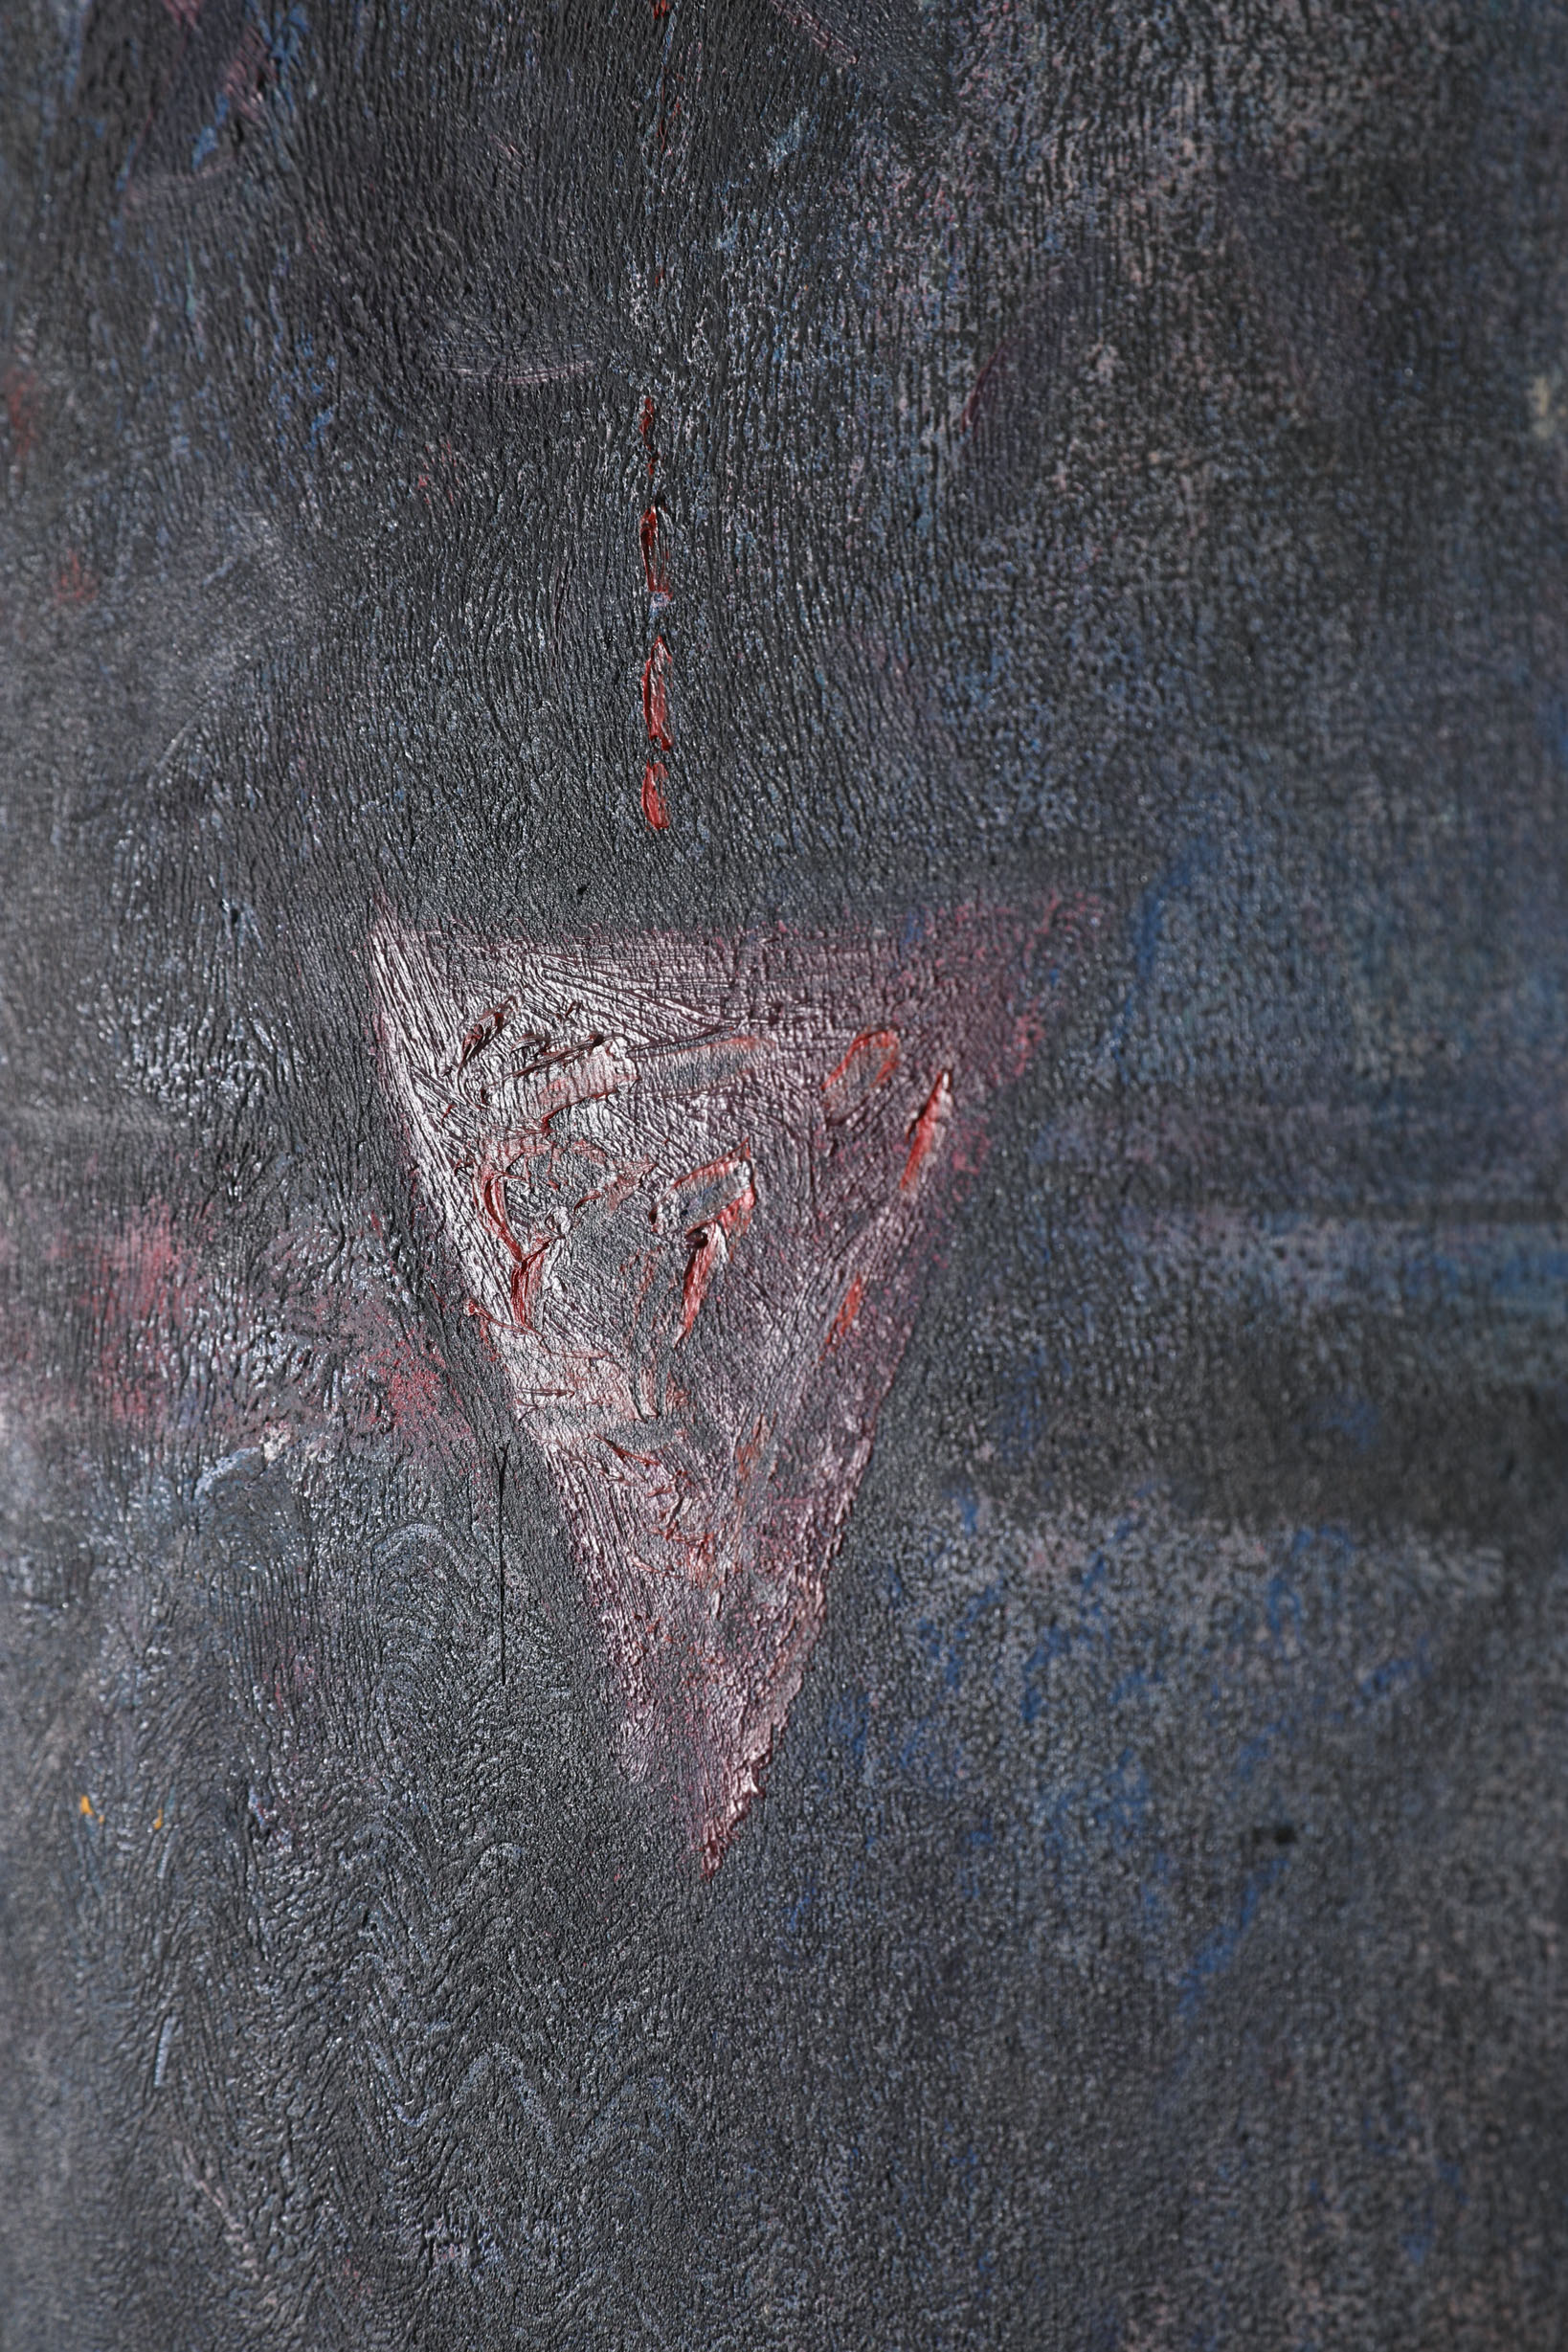 Hemraj, Metamorphosis, 1992, 180 x 150 cm, Oil on canvas - Image 6 of 7